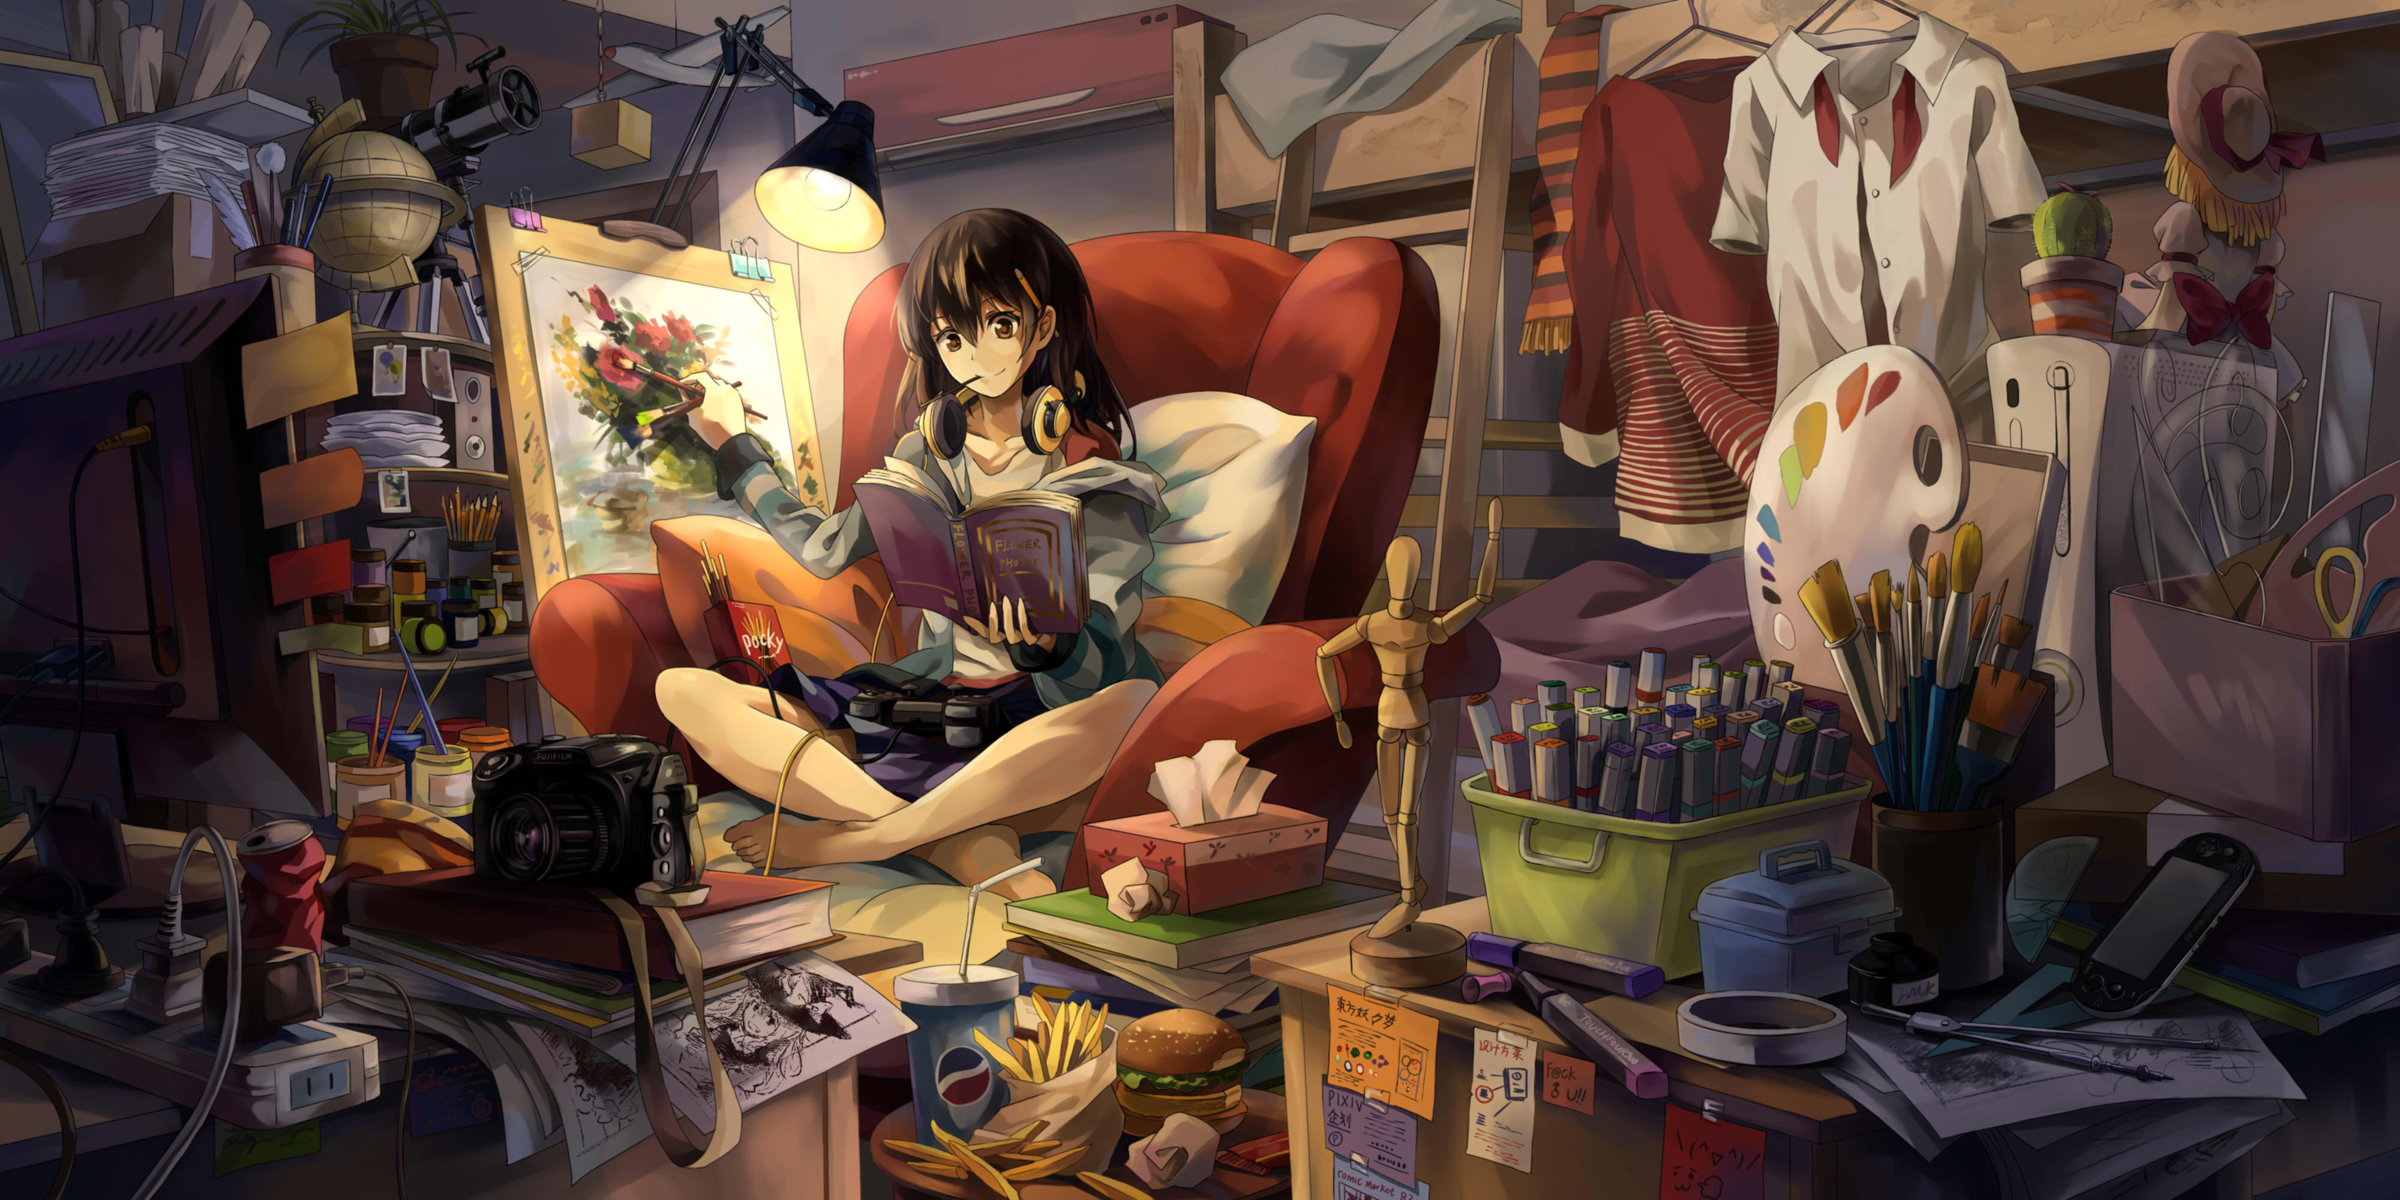 girl, anime, book, easel, headphones, lamp, room Full HD